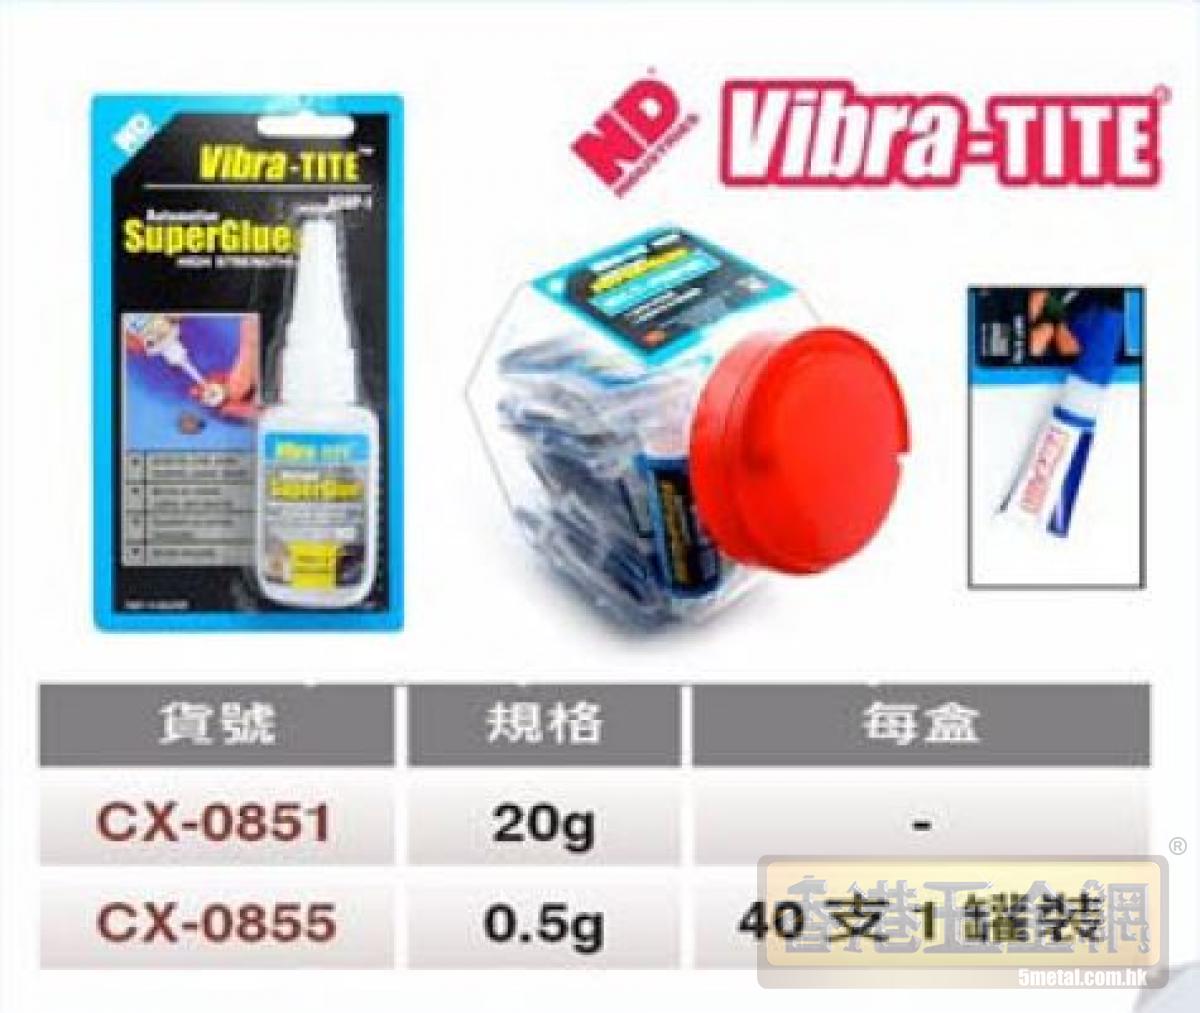 美國 ND Vibra-TITE瞬乾膠/超能膠水/氰基丙烯酸酯/Cyanoacrylates (Super Glue) - 介紹